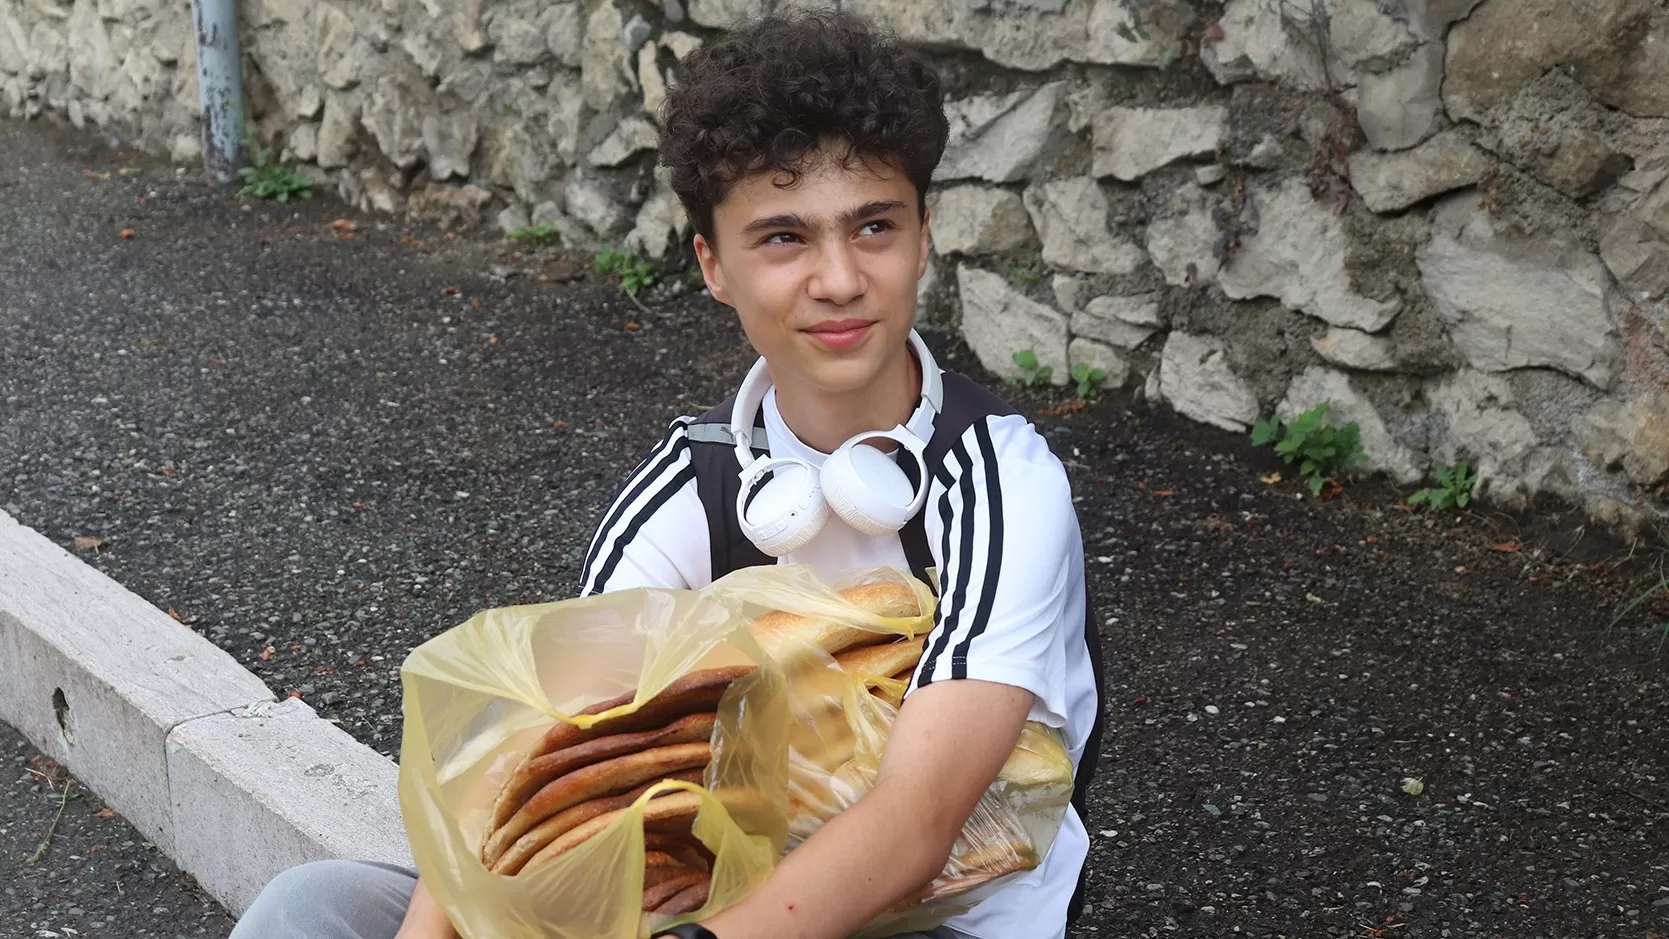 Ստեփանակերտցի 14-ամյա Դավիթն է․ որպես կամավոր ընկերների հետ ոտքով հաց է հասցնում խանութների